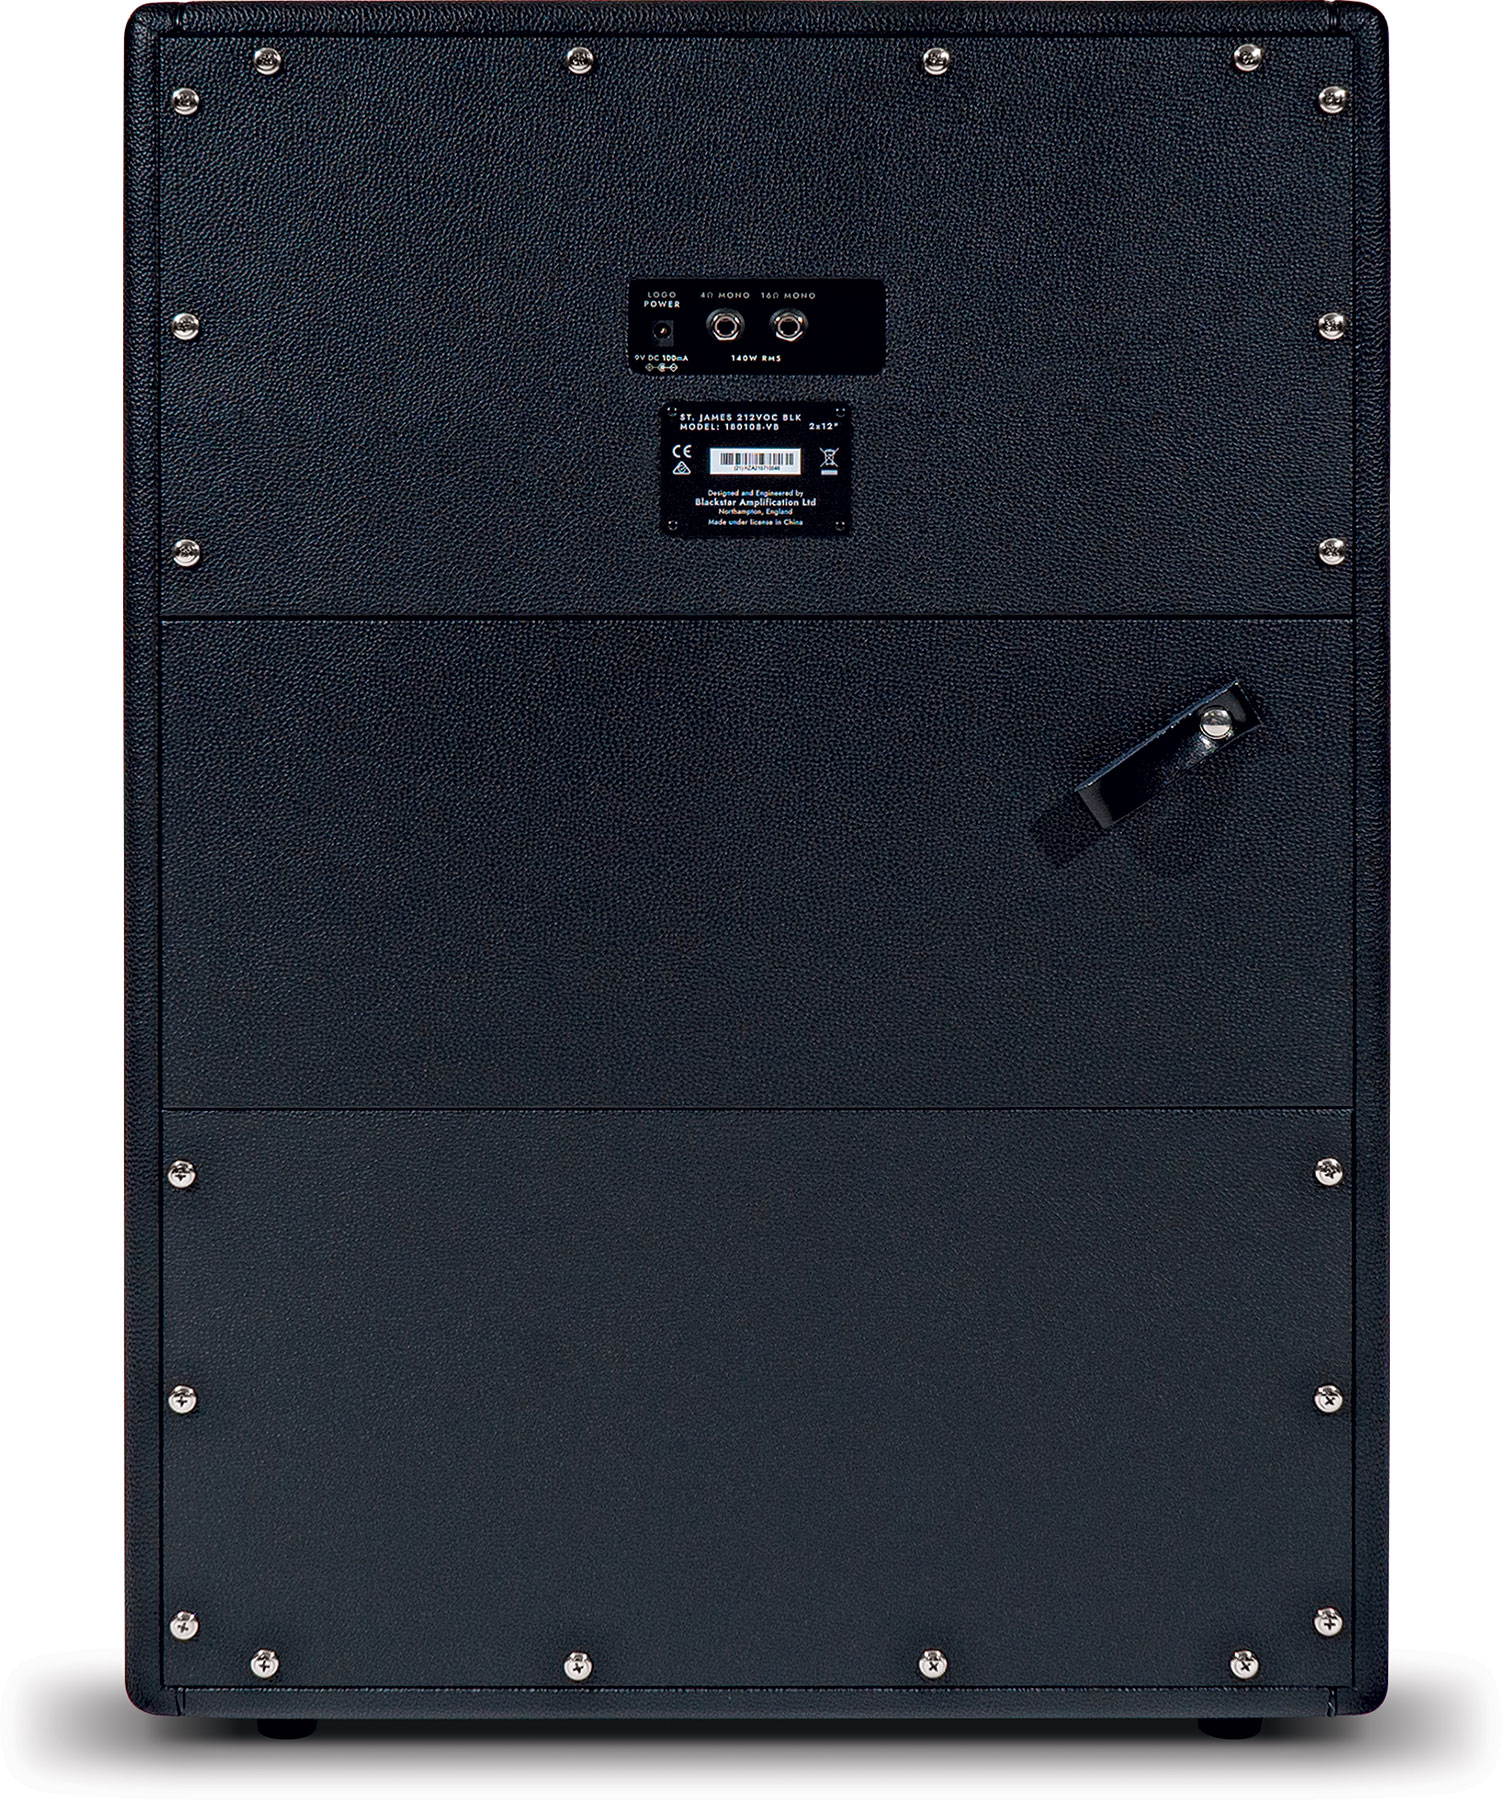 Blackstar St. James 212 Voc 2x12 140w 4/16-ohms Black - Elektrische gitaar speakerkast - Variation 2